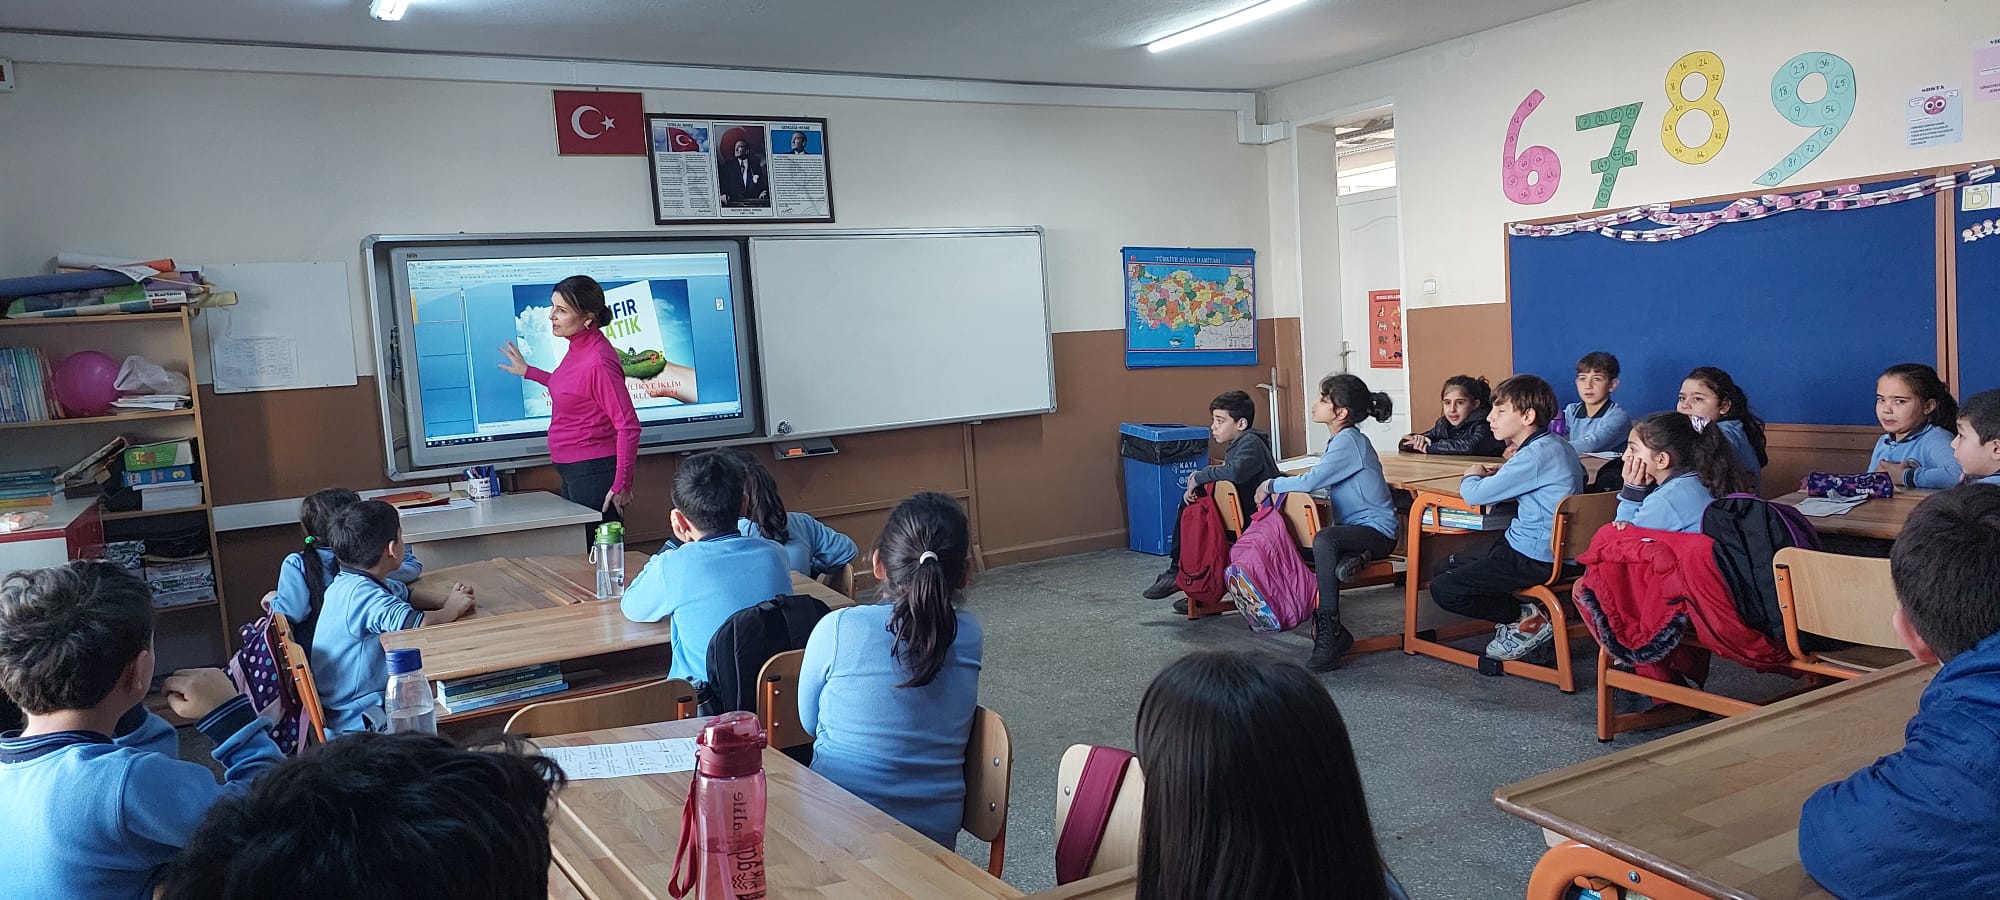 İlimiz Efeler ilçesi Kardeşköy İlkokulu'nda, öğrenci ve öğretmenlere yönelik Sıfır Atık konulu eğitim…